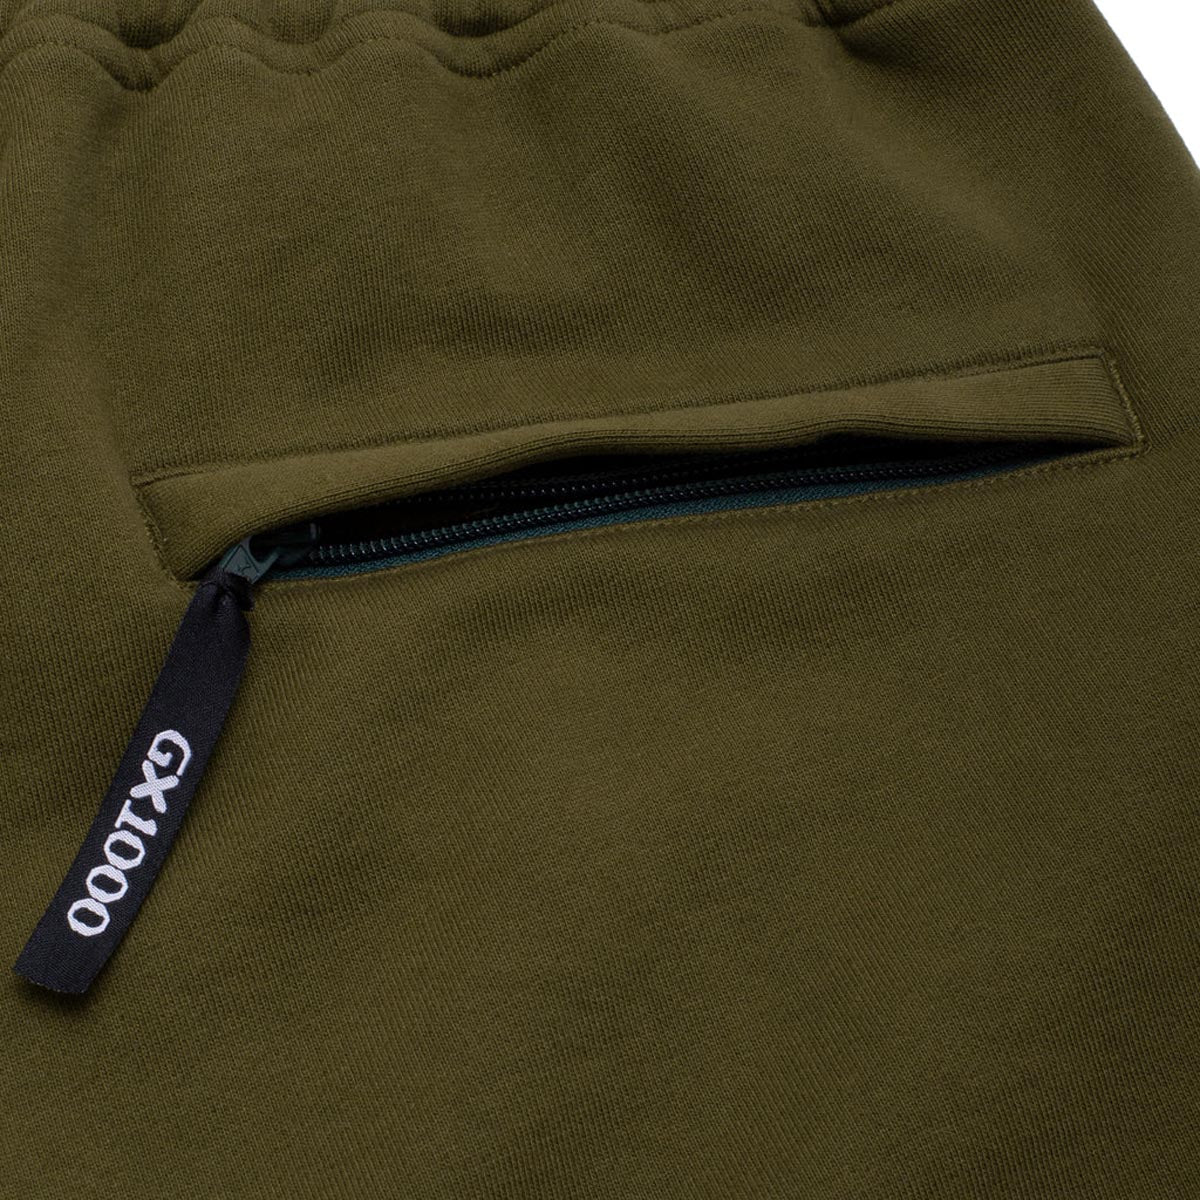 GX1000 Sweat Shorts - Olive image 4